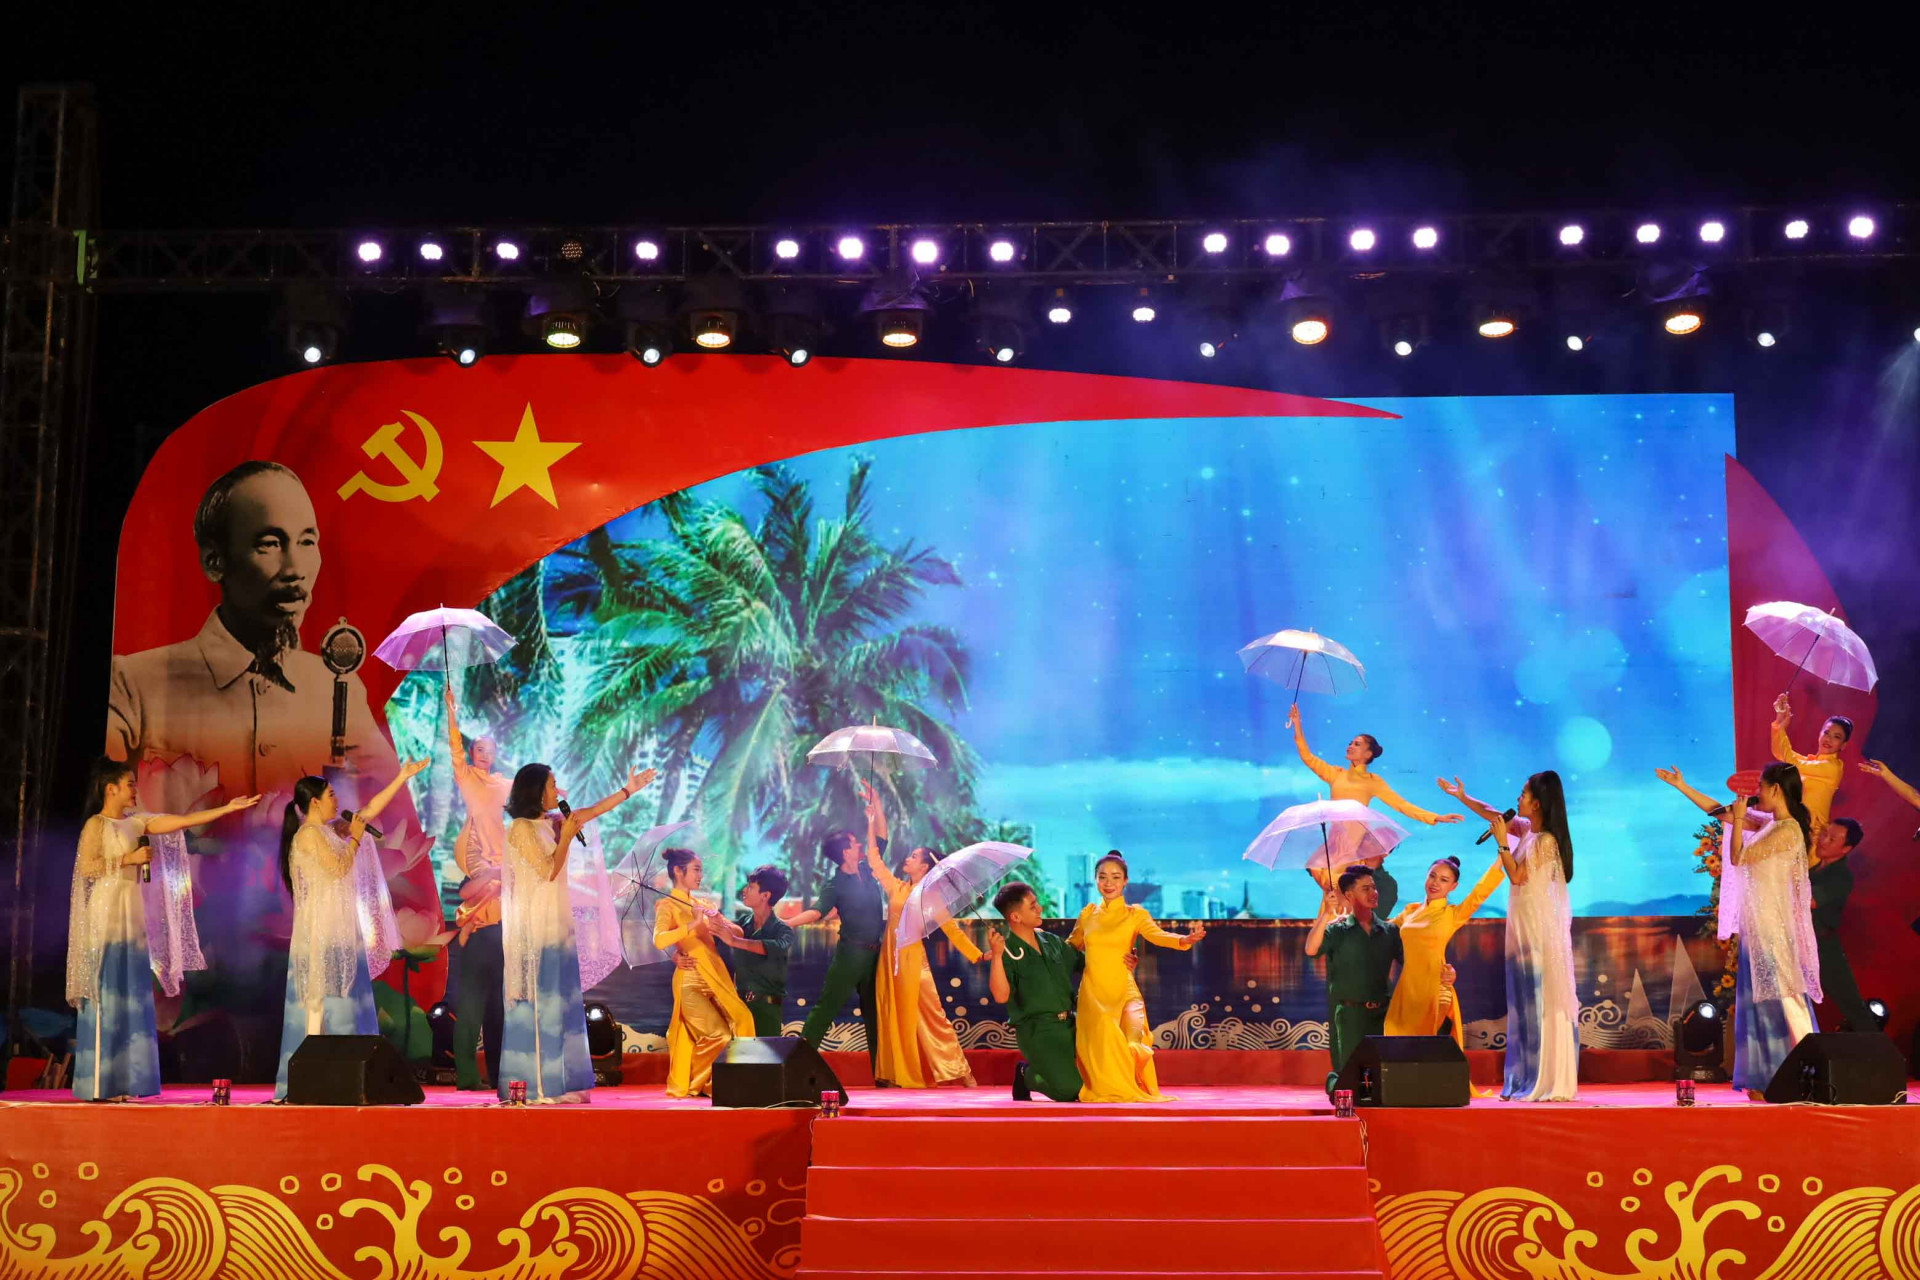 Hình ảnh về quê hương, con người Nha Trang – Khánh Hòa trong ca khúc Nha Trang mùa thu lại về được chọn để mở đầu chương trình nghệ thuật. 